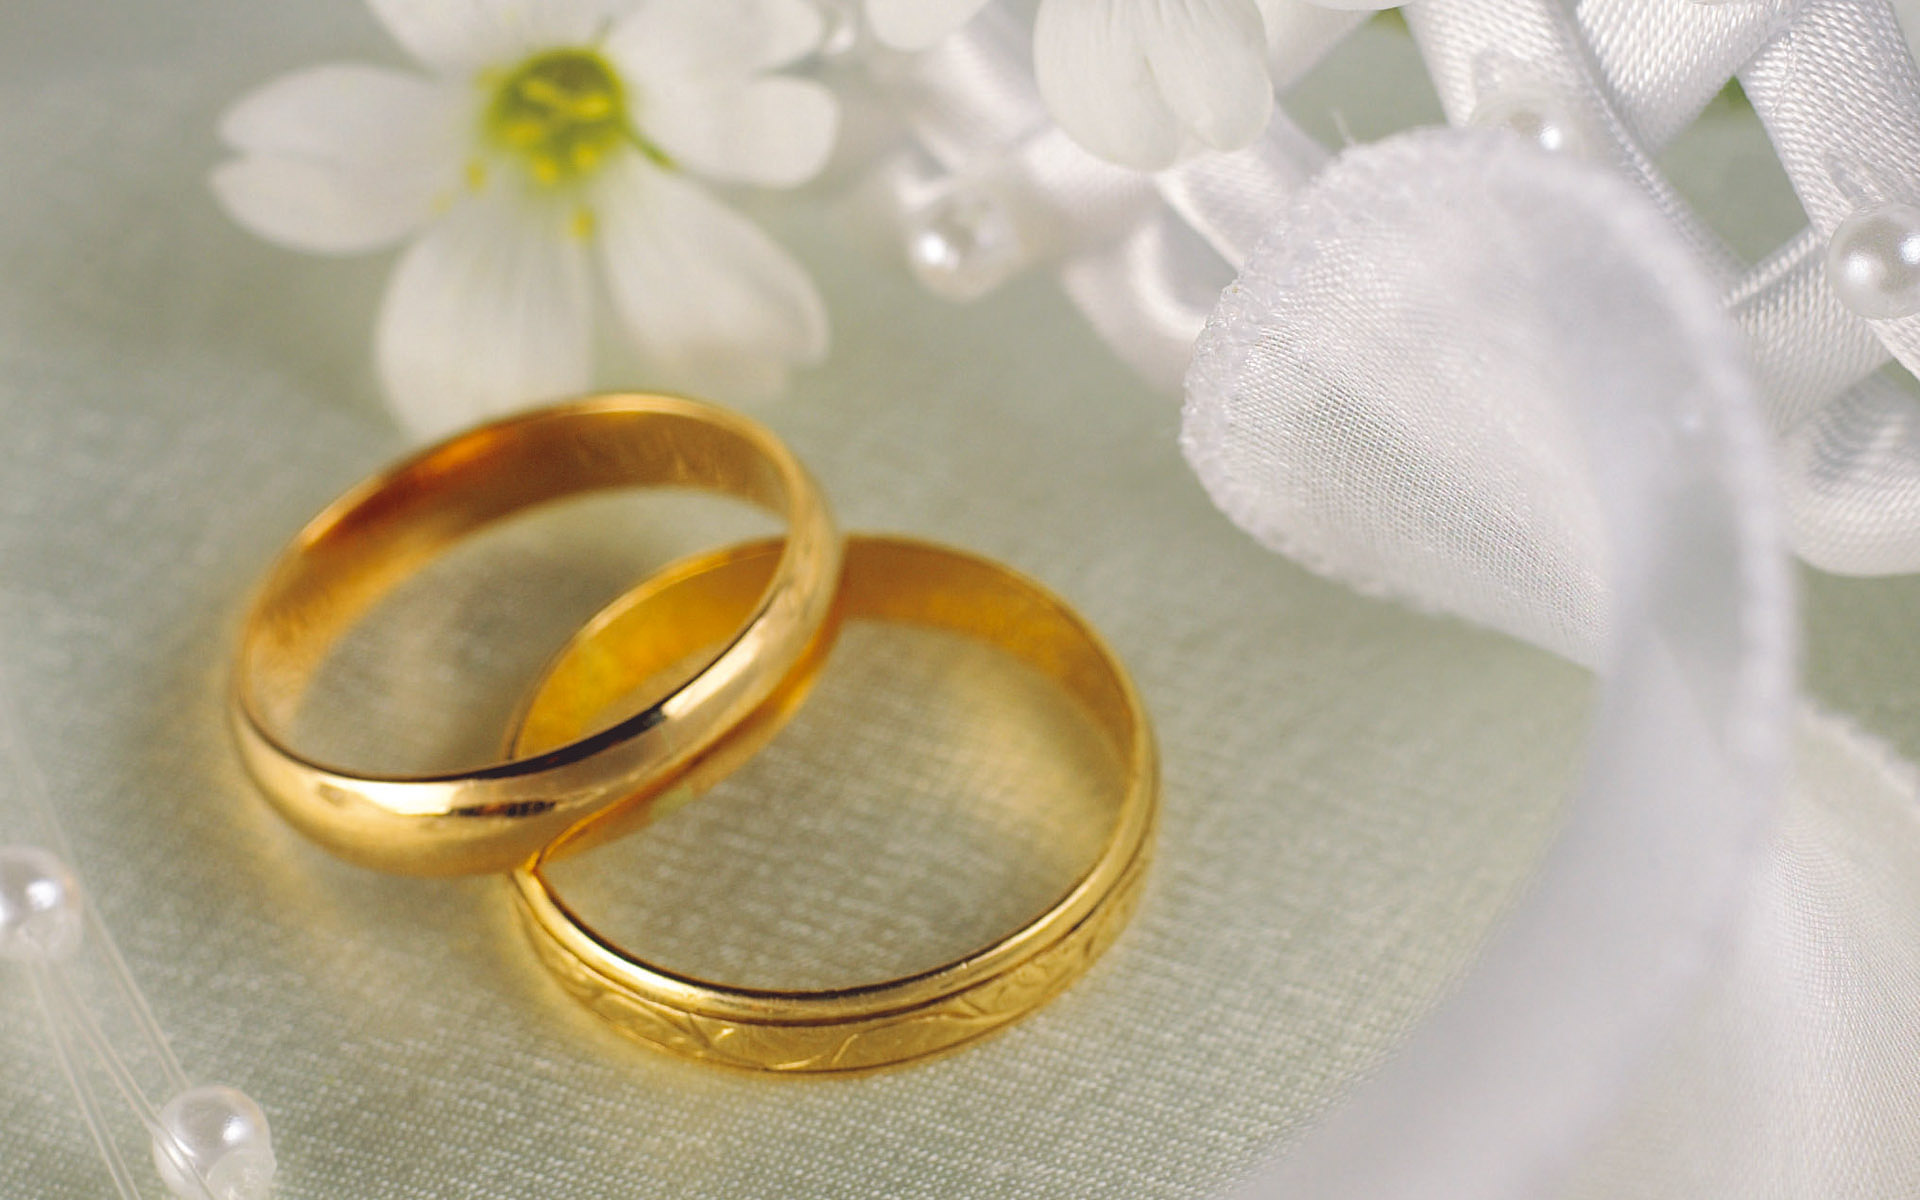 fondo de pantalla de anillo de bodas,anillo de bodas,amarillo,joyería del cuerpo,anillo,suministro de ceremonia de boda